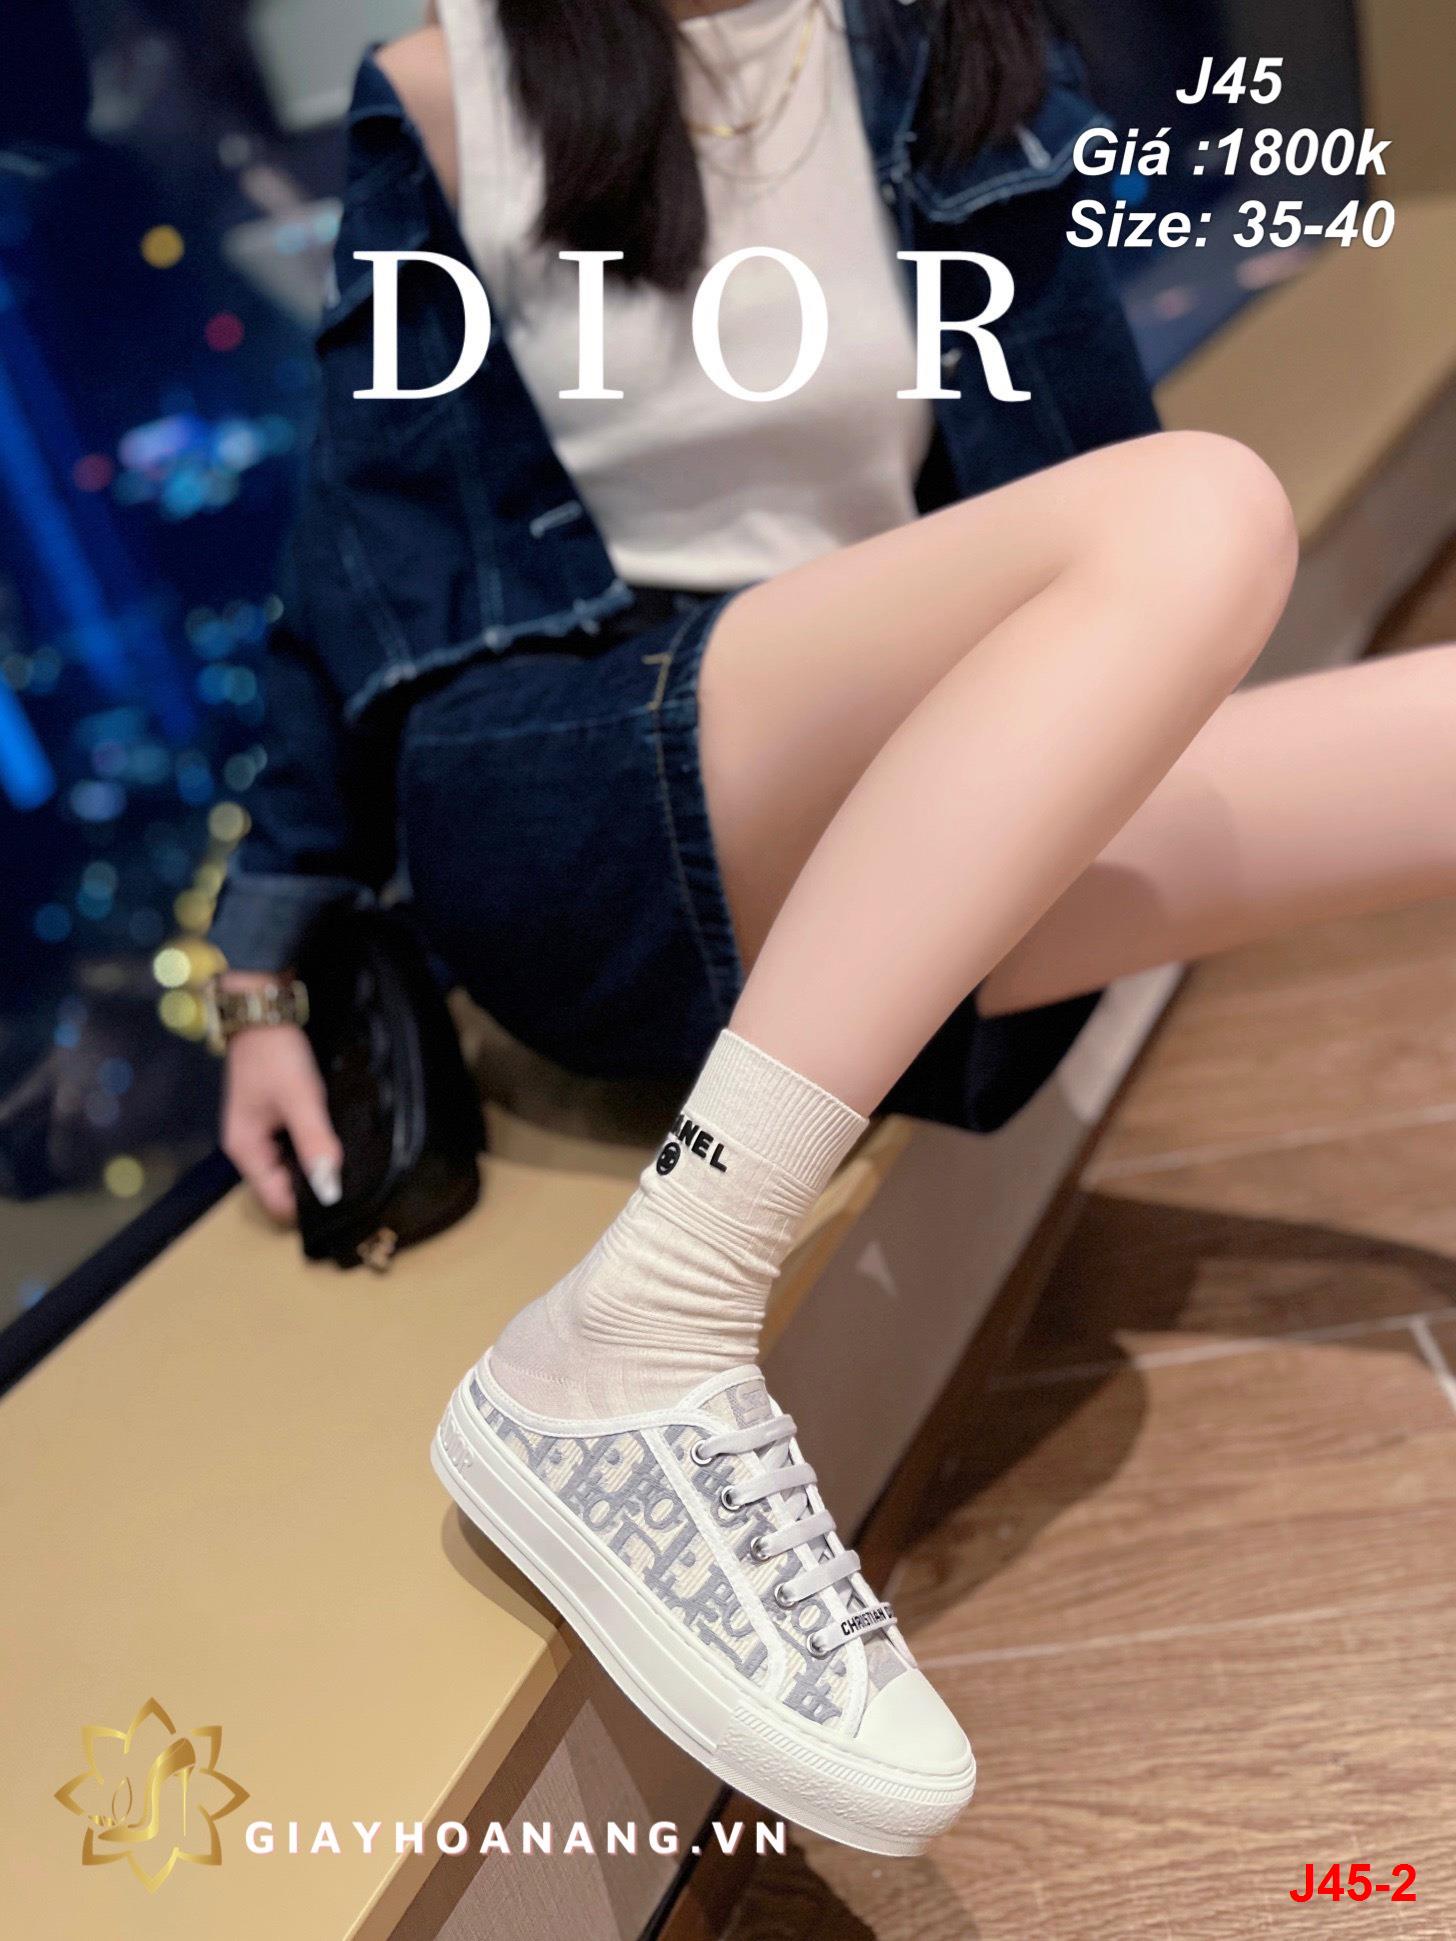 J45-2 Dior giày thể thao siêu cấp